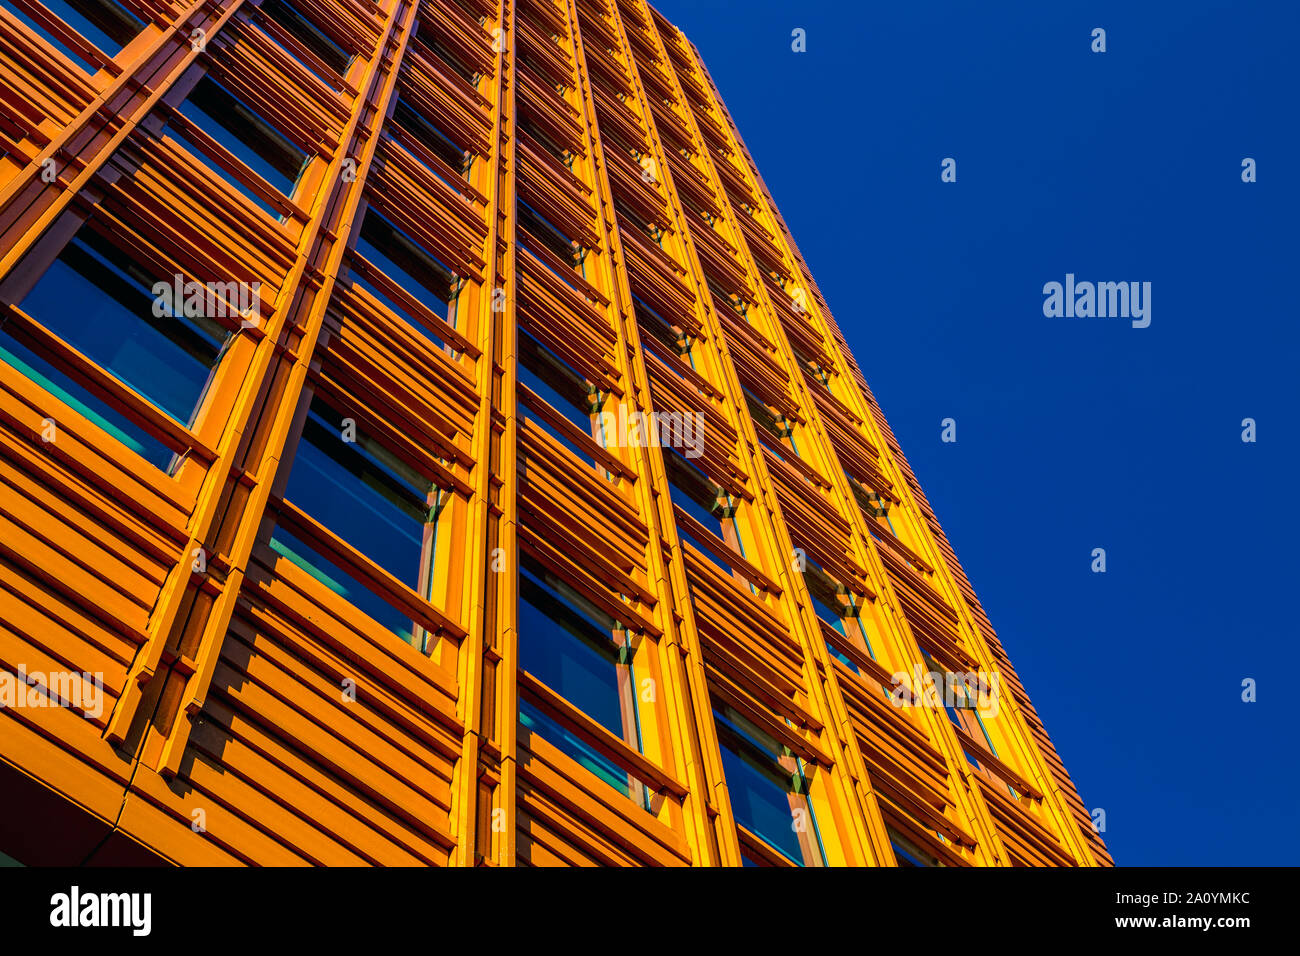 Colorida fachada de edificio de la Central Saint Giles diseñado por el arquitecto italiano Renzo Piano, St Giles, Londres, Reino Unido. Foto de stock